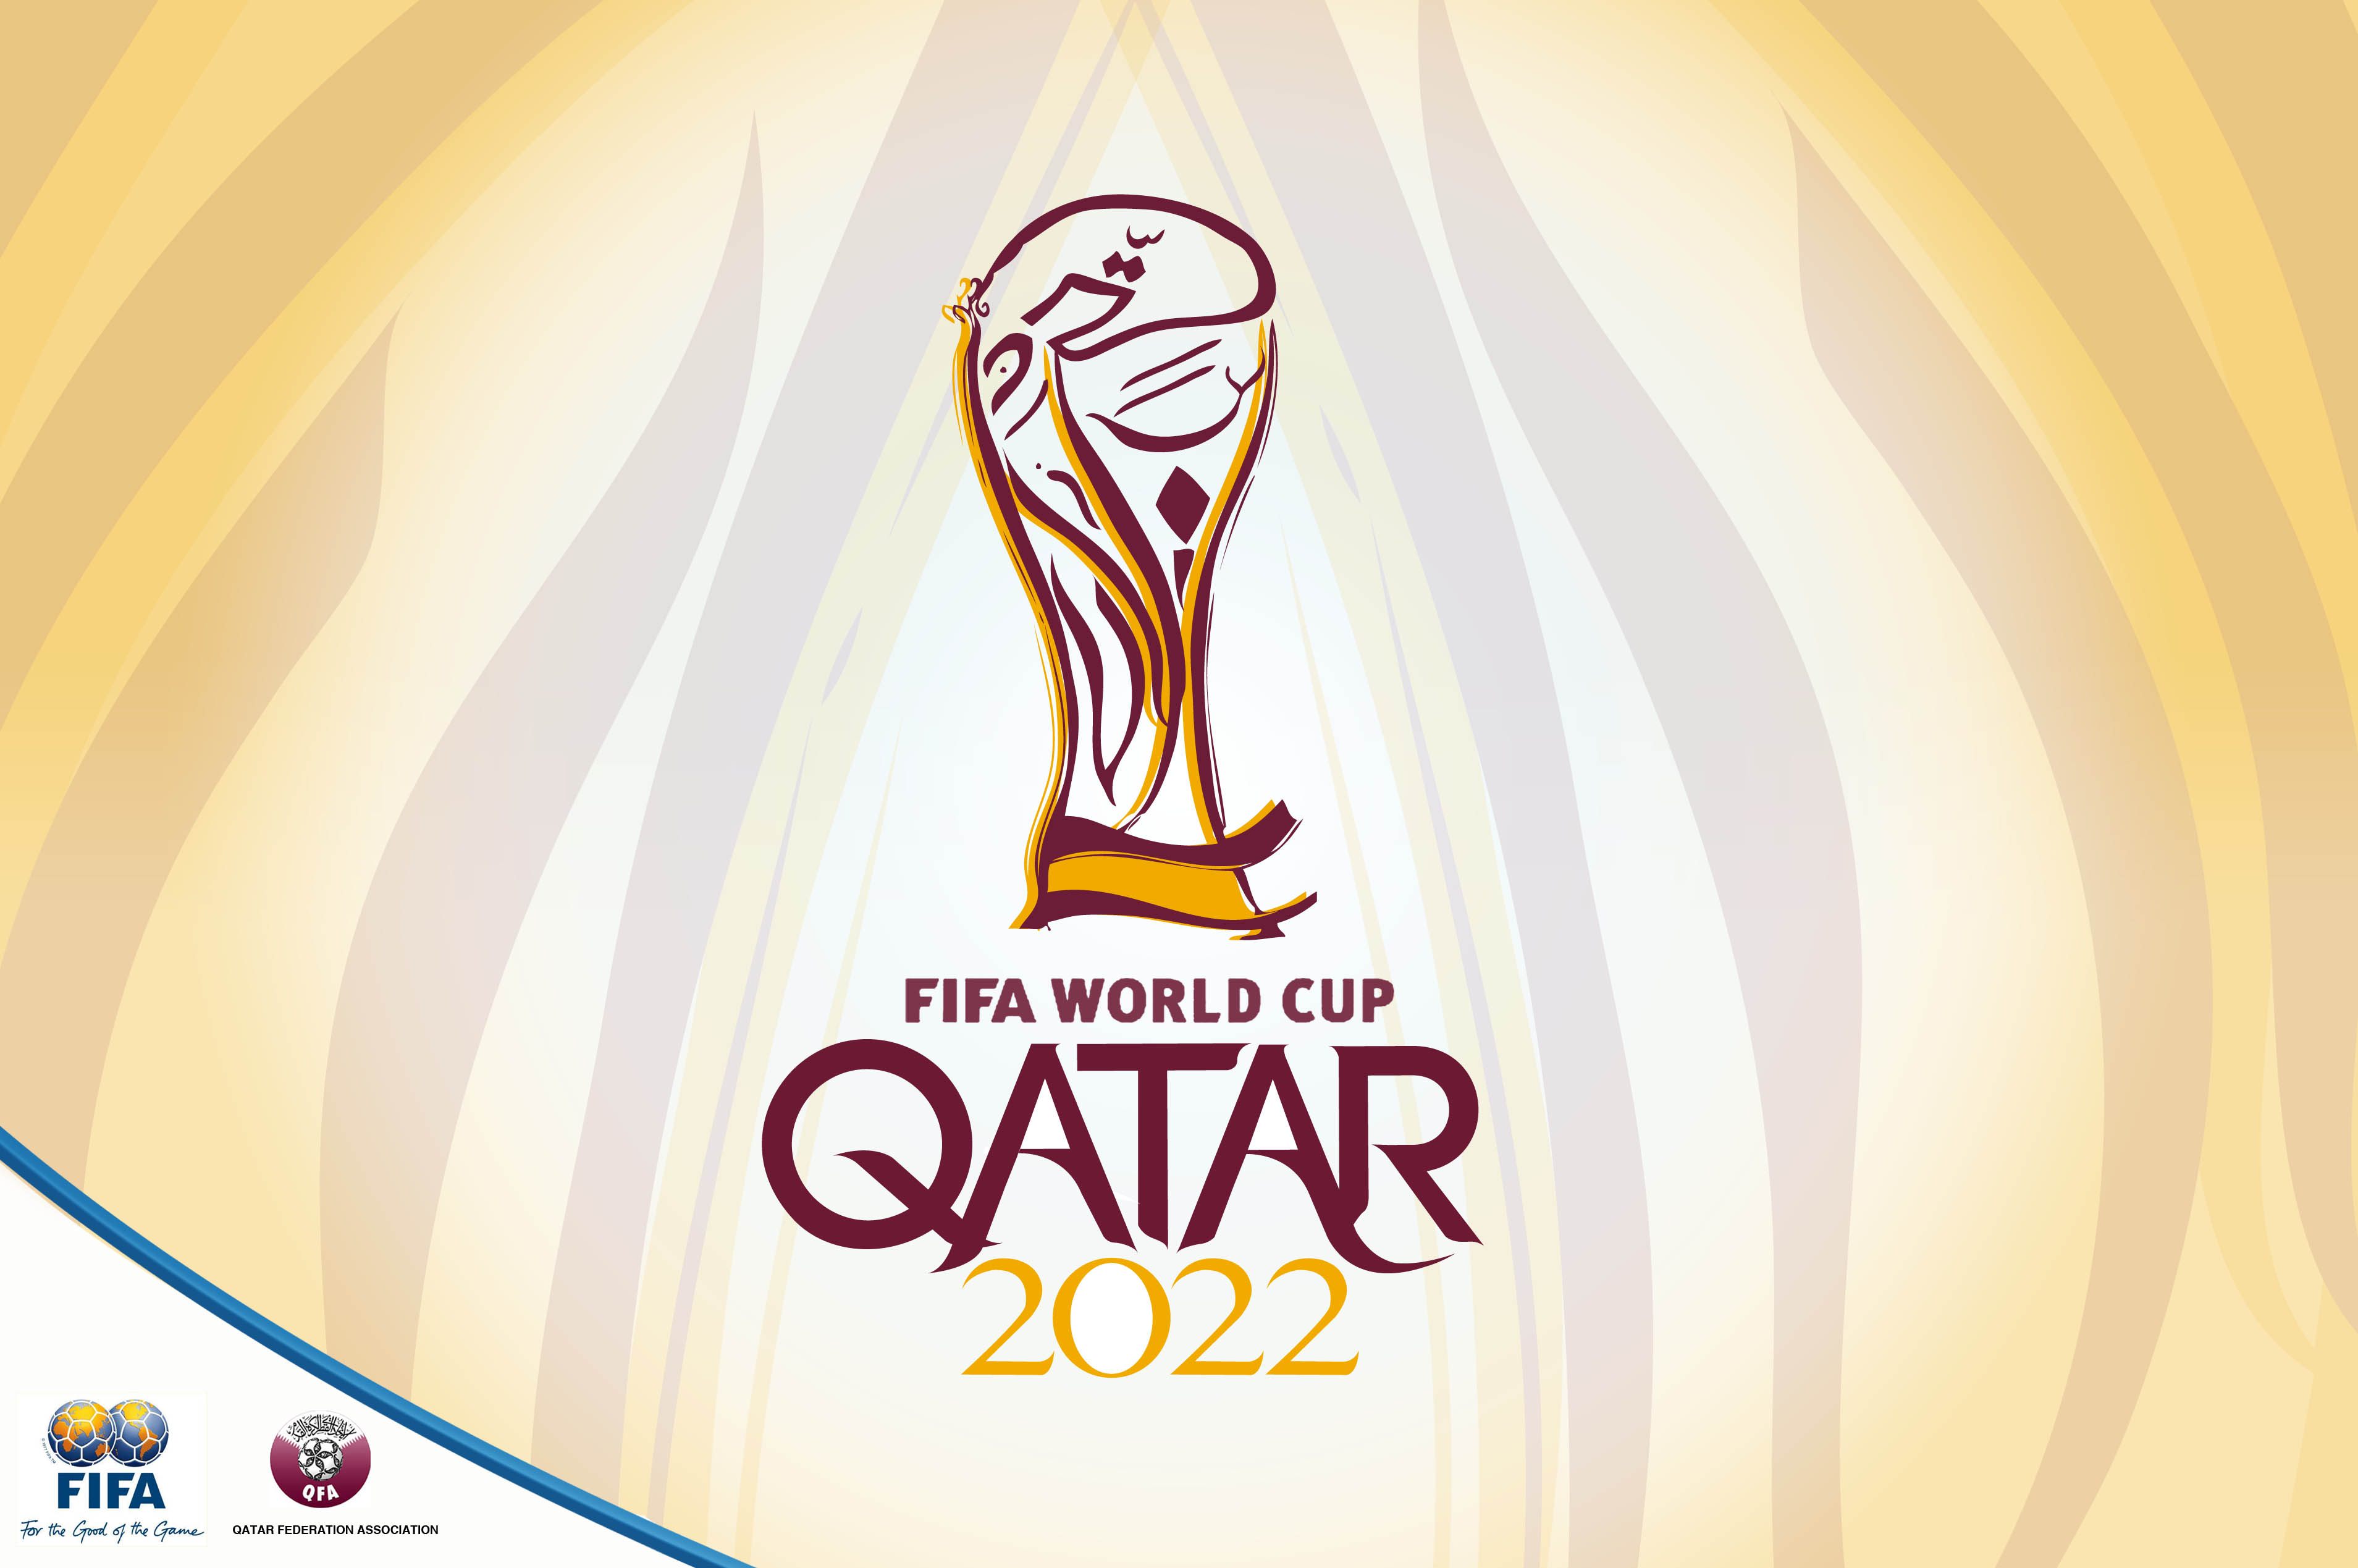 Le Qatar veut être le pays hôte de la Coupe du monde de football 2022